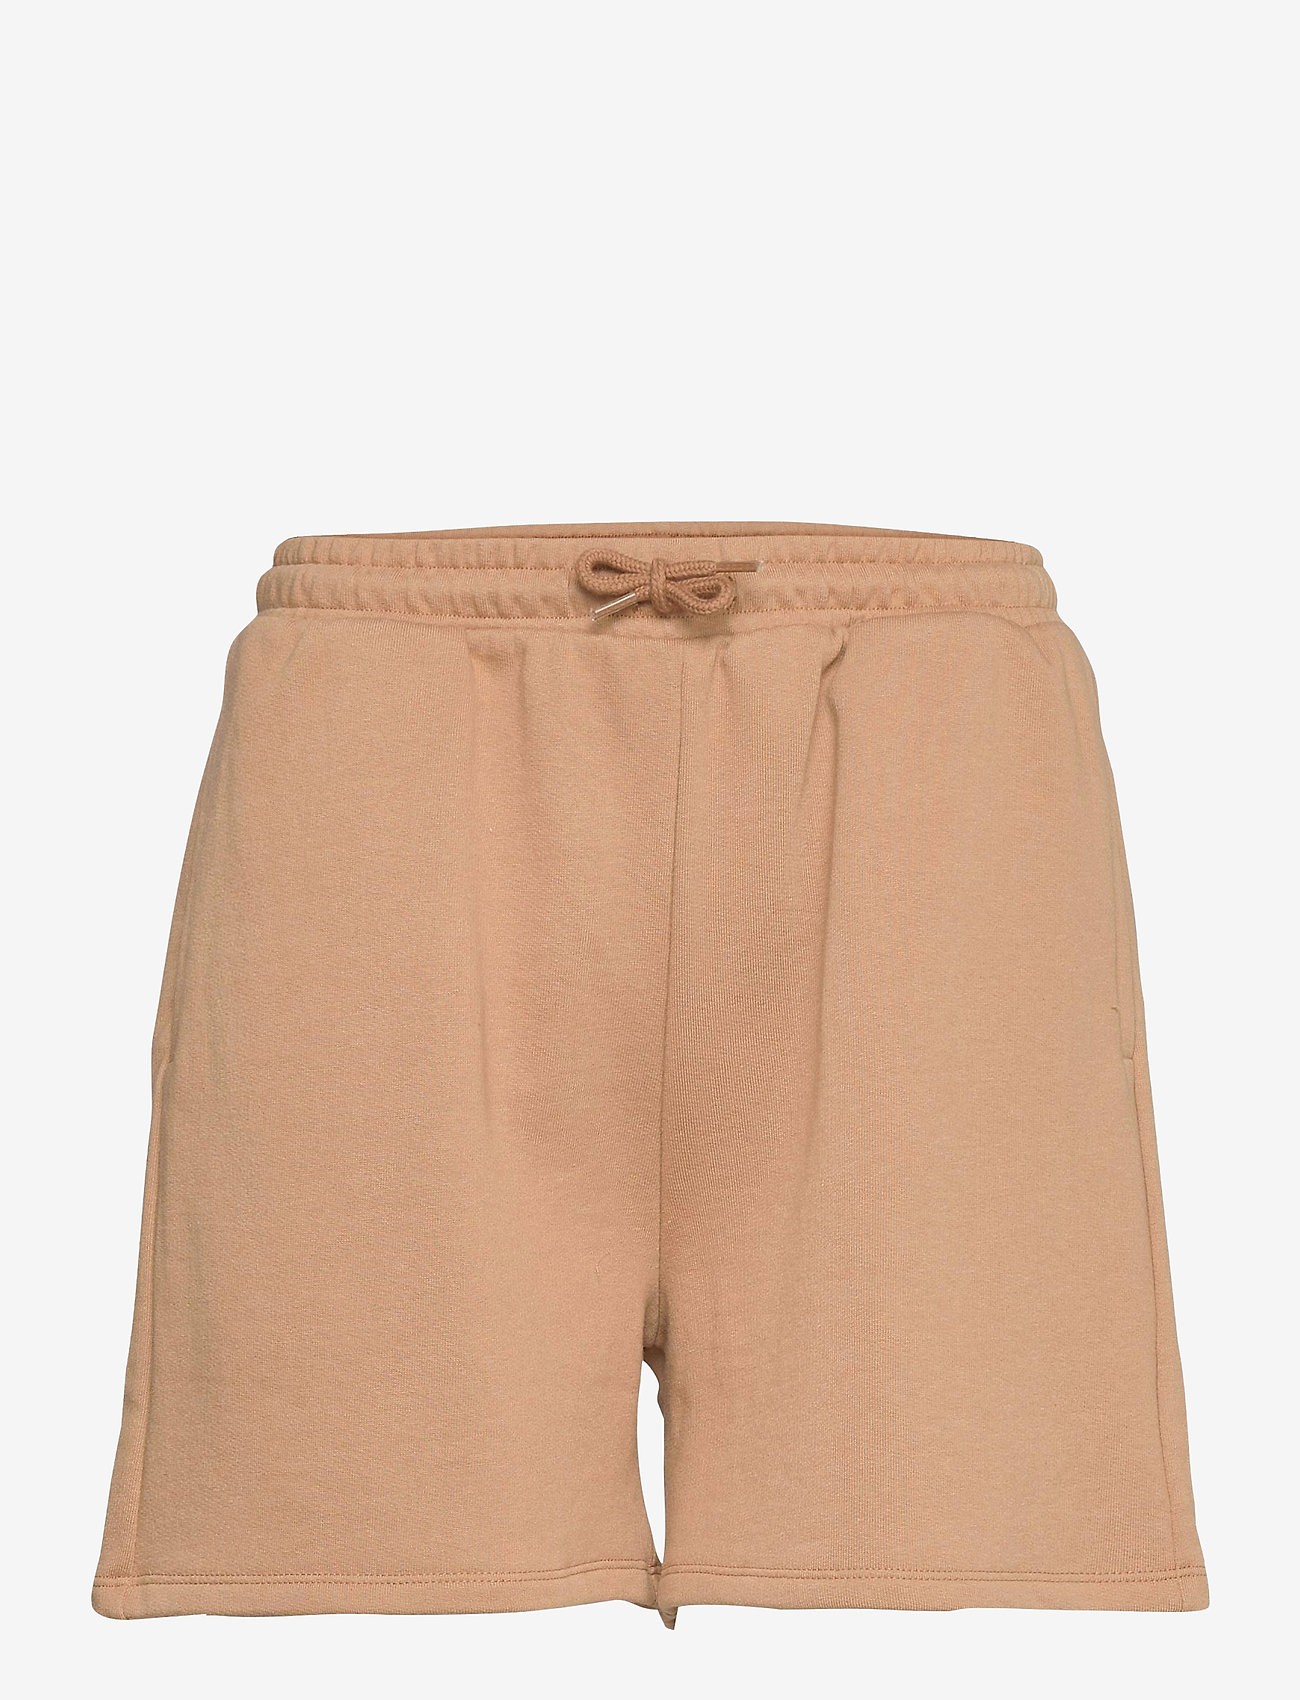 Modström - Holly shorts - sweat shorts - camel - 0